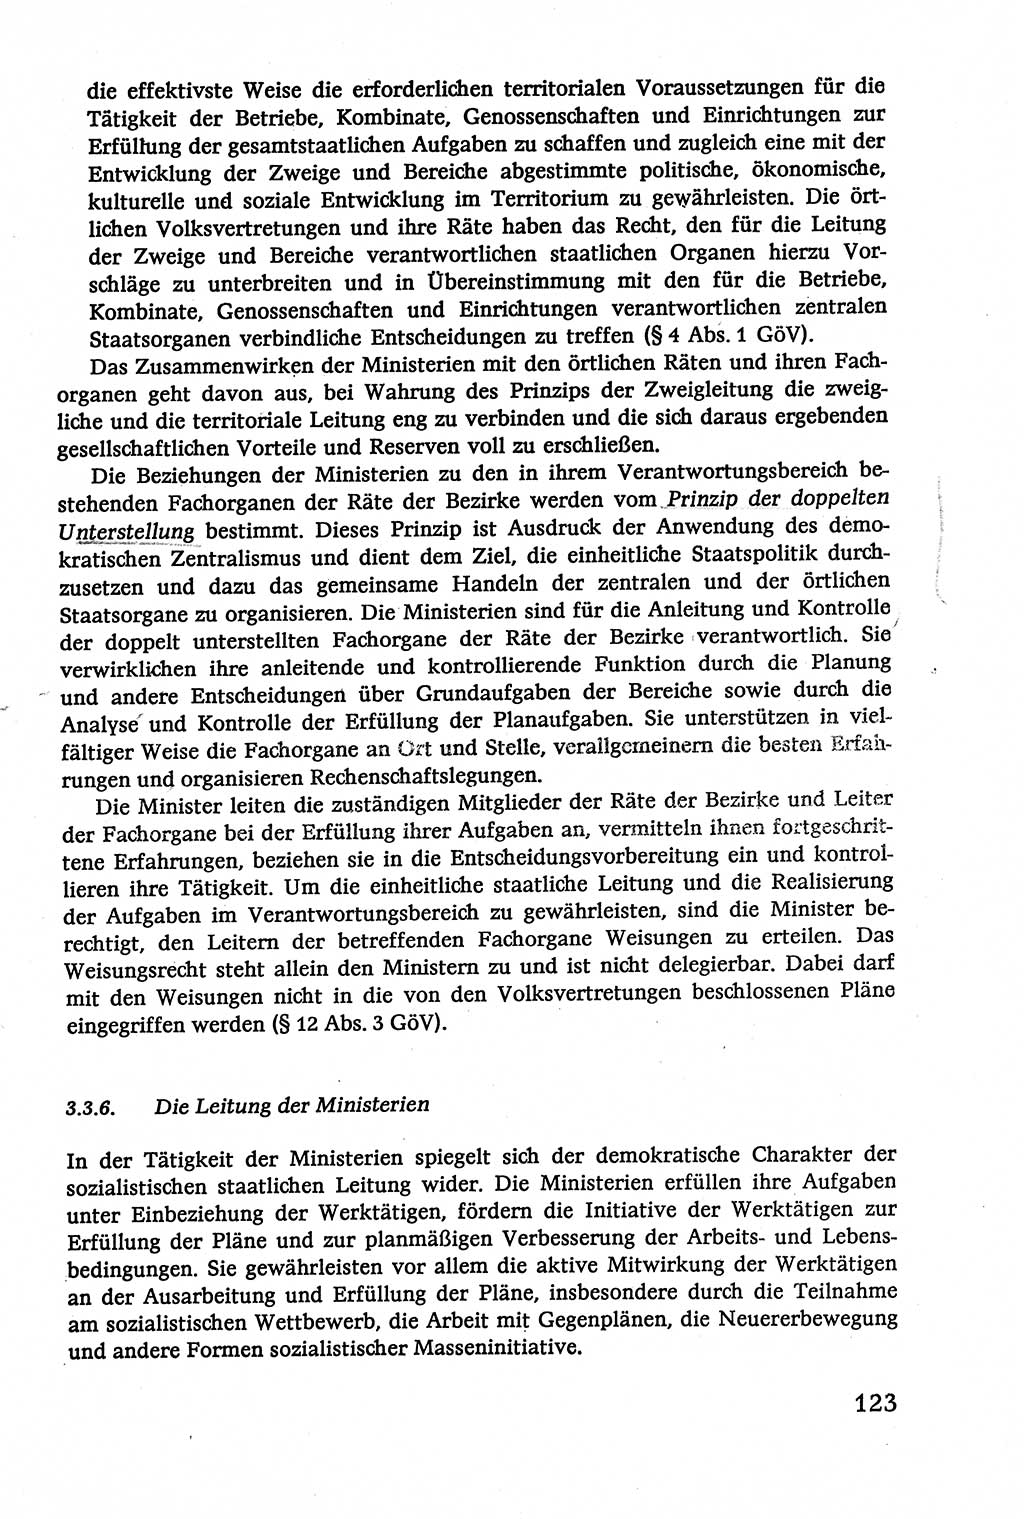 Verwaltungsrecht [Deutsche Demokratische Republik (DDR)], Lehrbuch 1979, Seite 123 (Verw.-R. DDR Lb. 1979, S. 123)